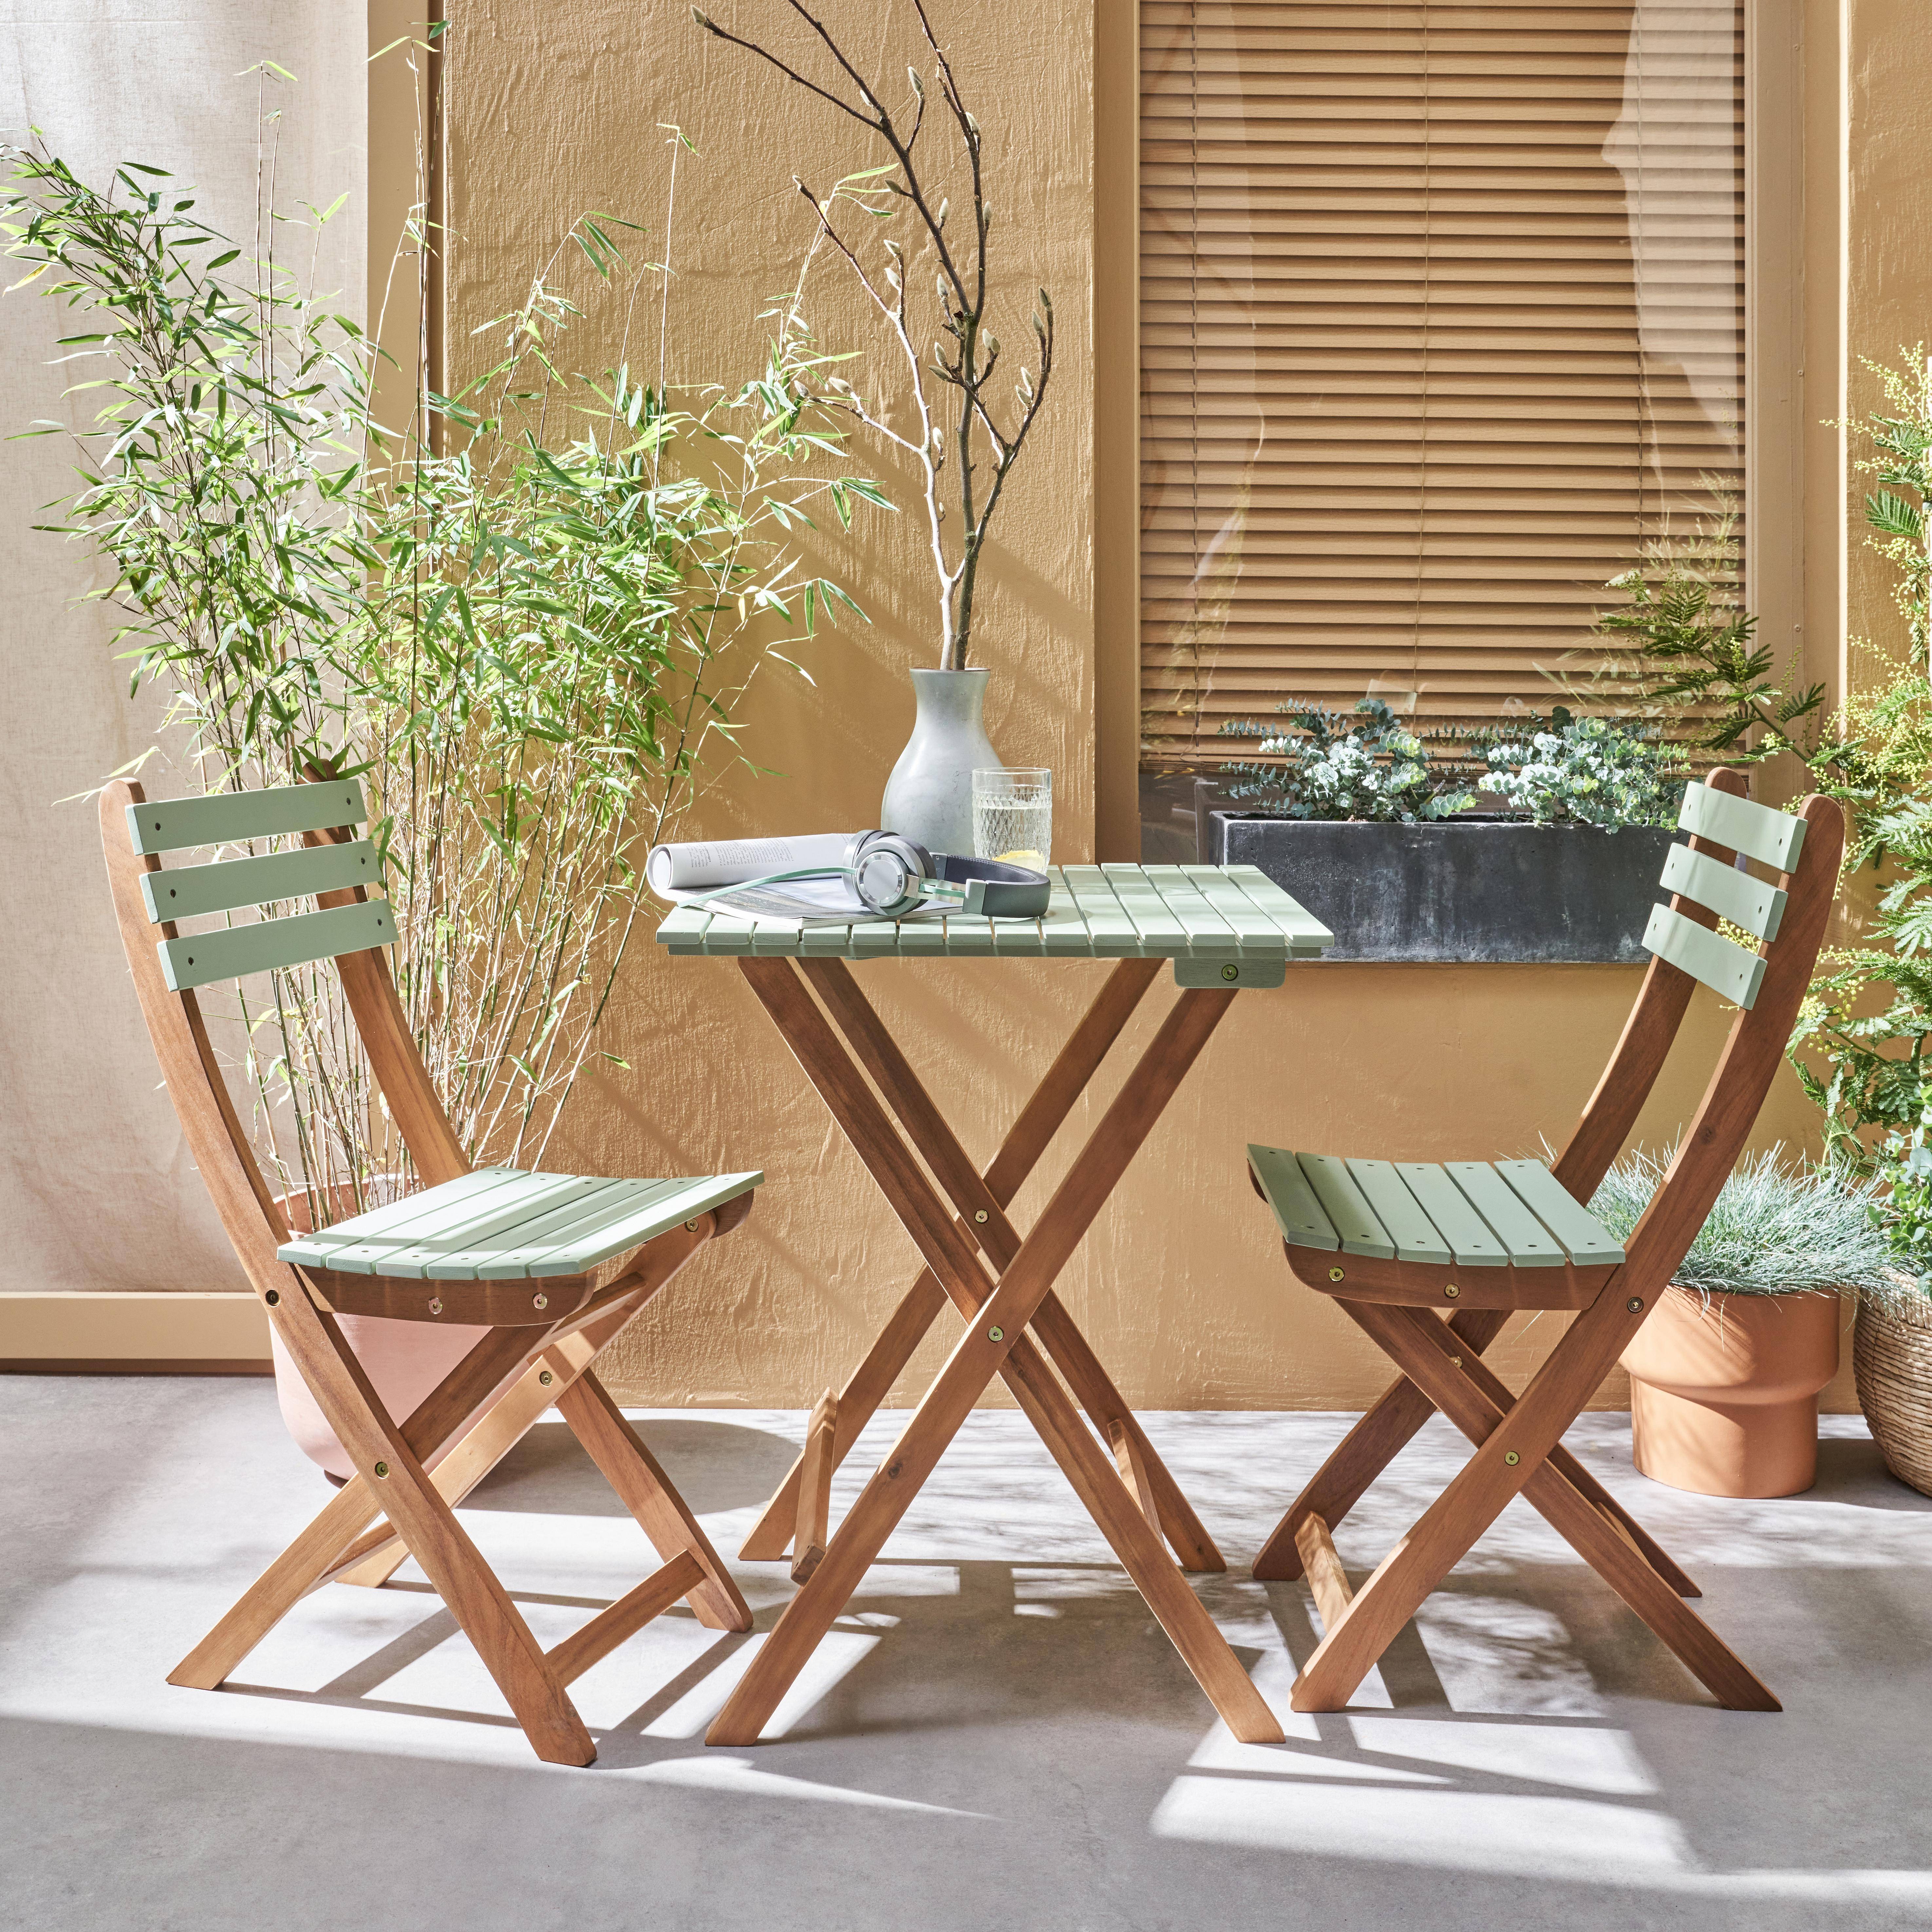 Conjunto de jardín de madera Bistro 60x60cm - Barcelona - verde grisáceo, mesa plegable bicolor con 2 sillas plegables, acacia Photo1